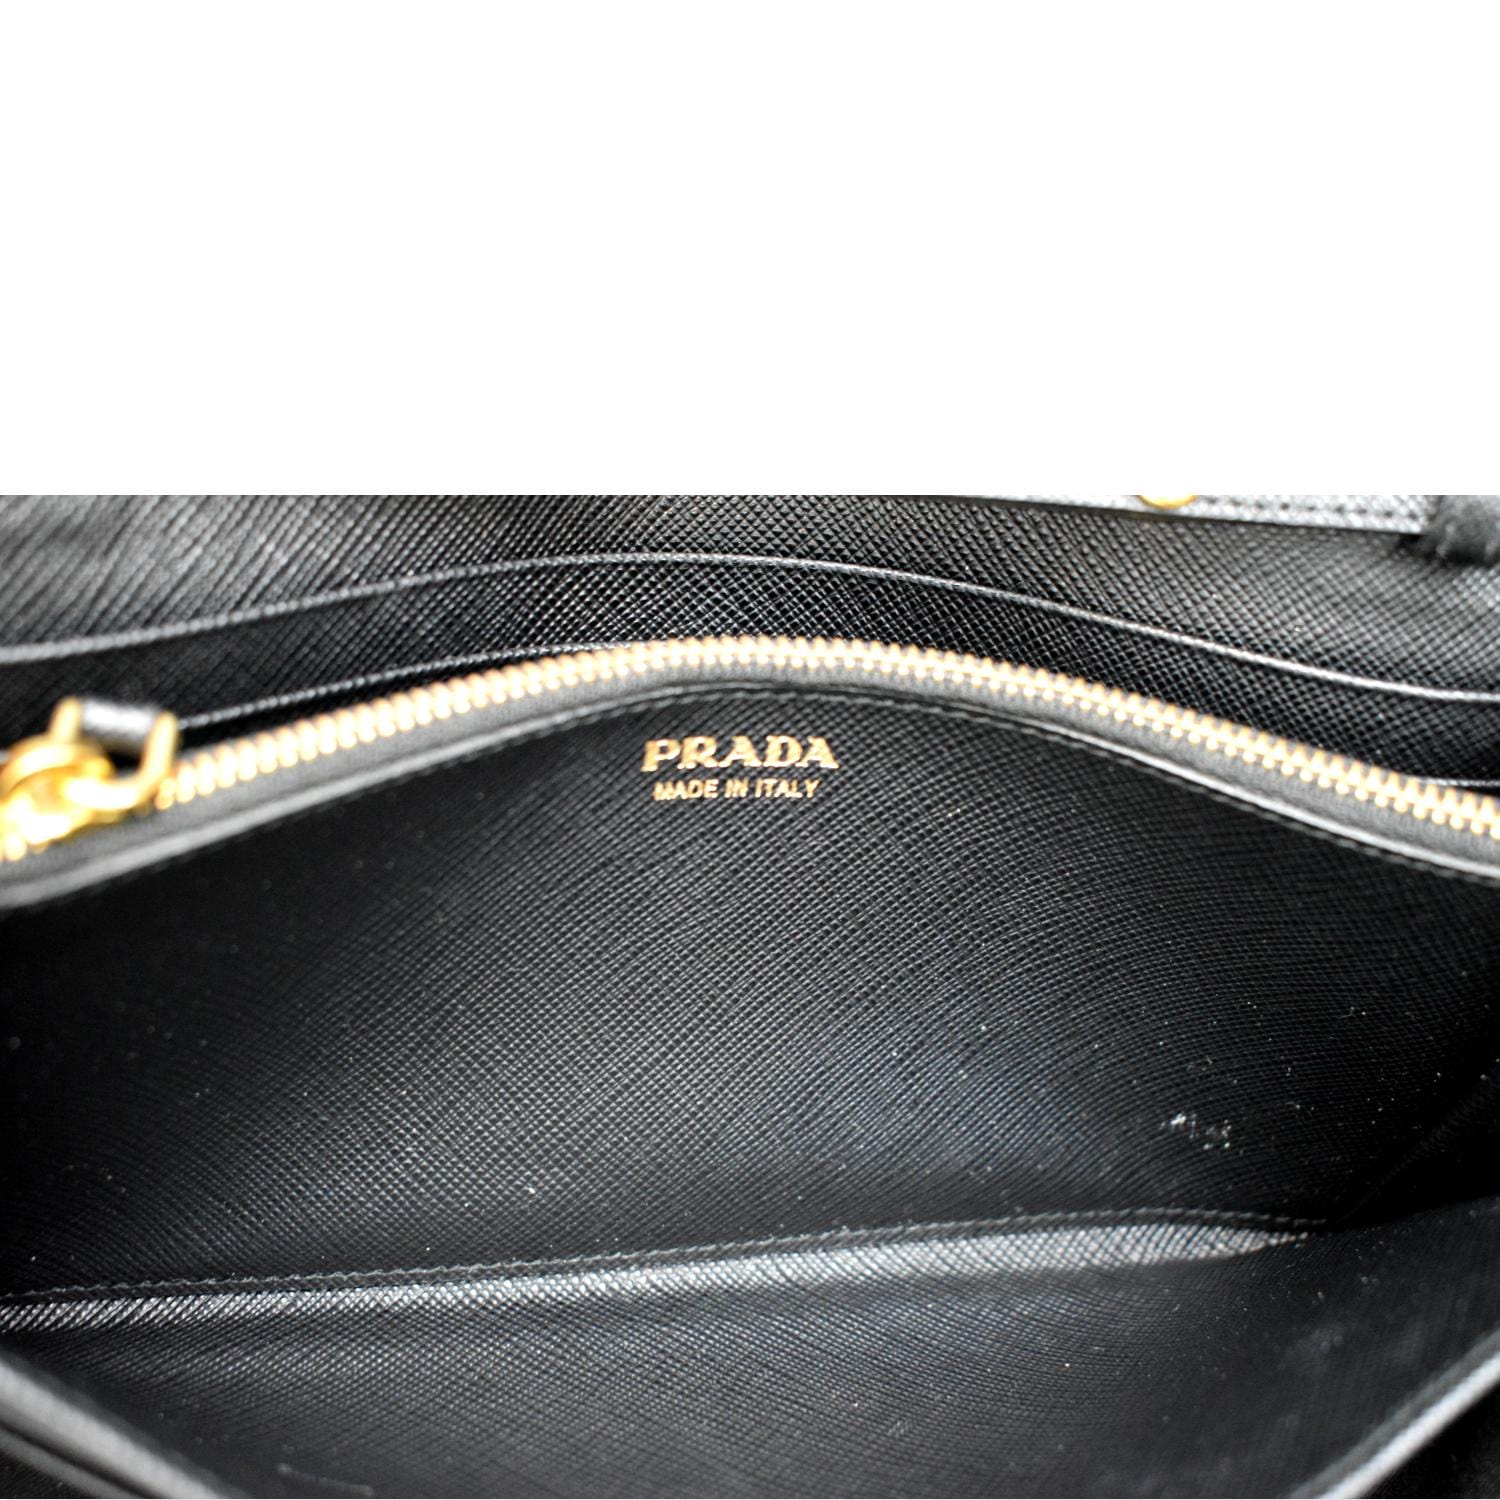 PRADA Saffiano Leather Wallet on Chain Clutch Crossbody Bag Black